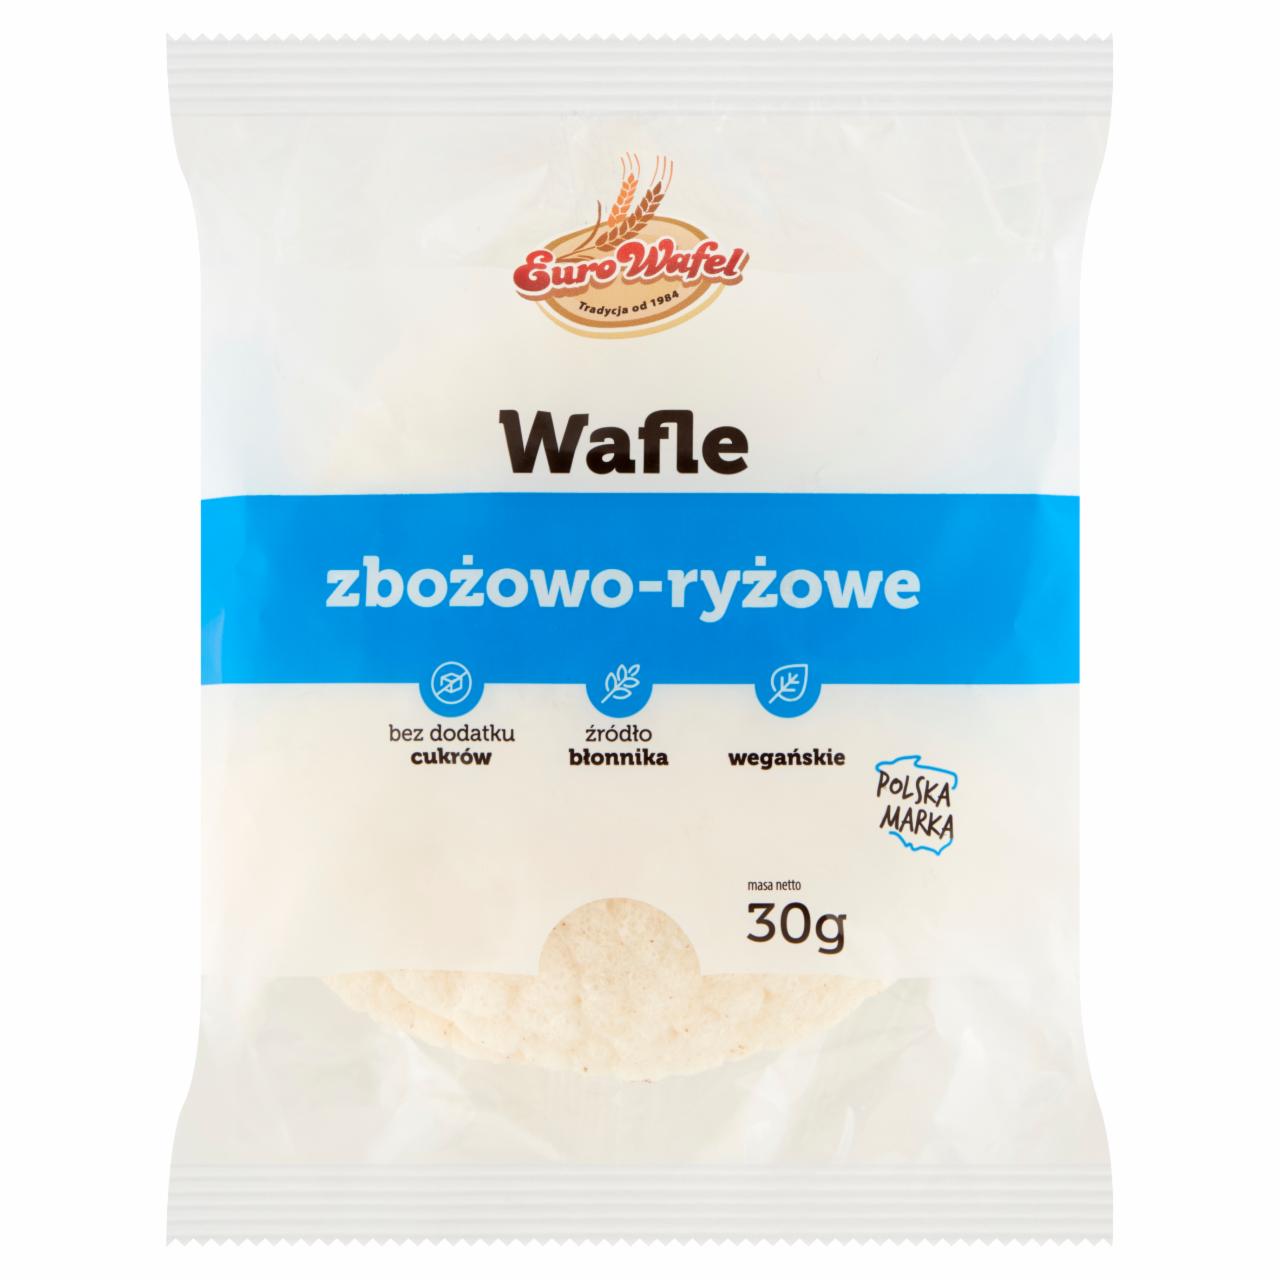 Zdjęcia - Eurowafel Wafle zbożowo-ryżowe 30 g